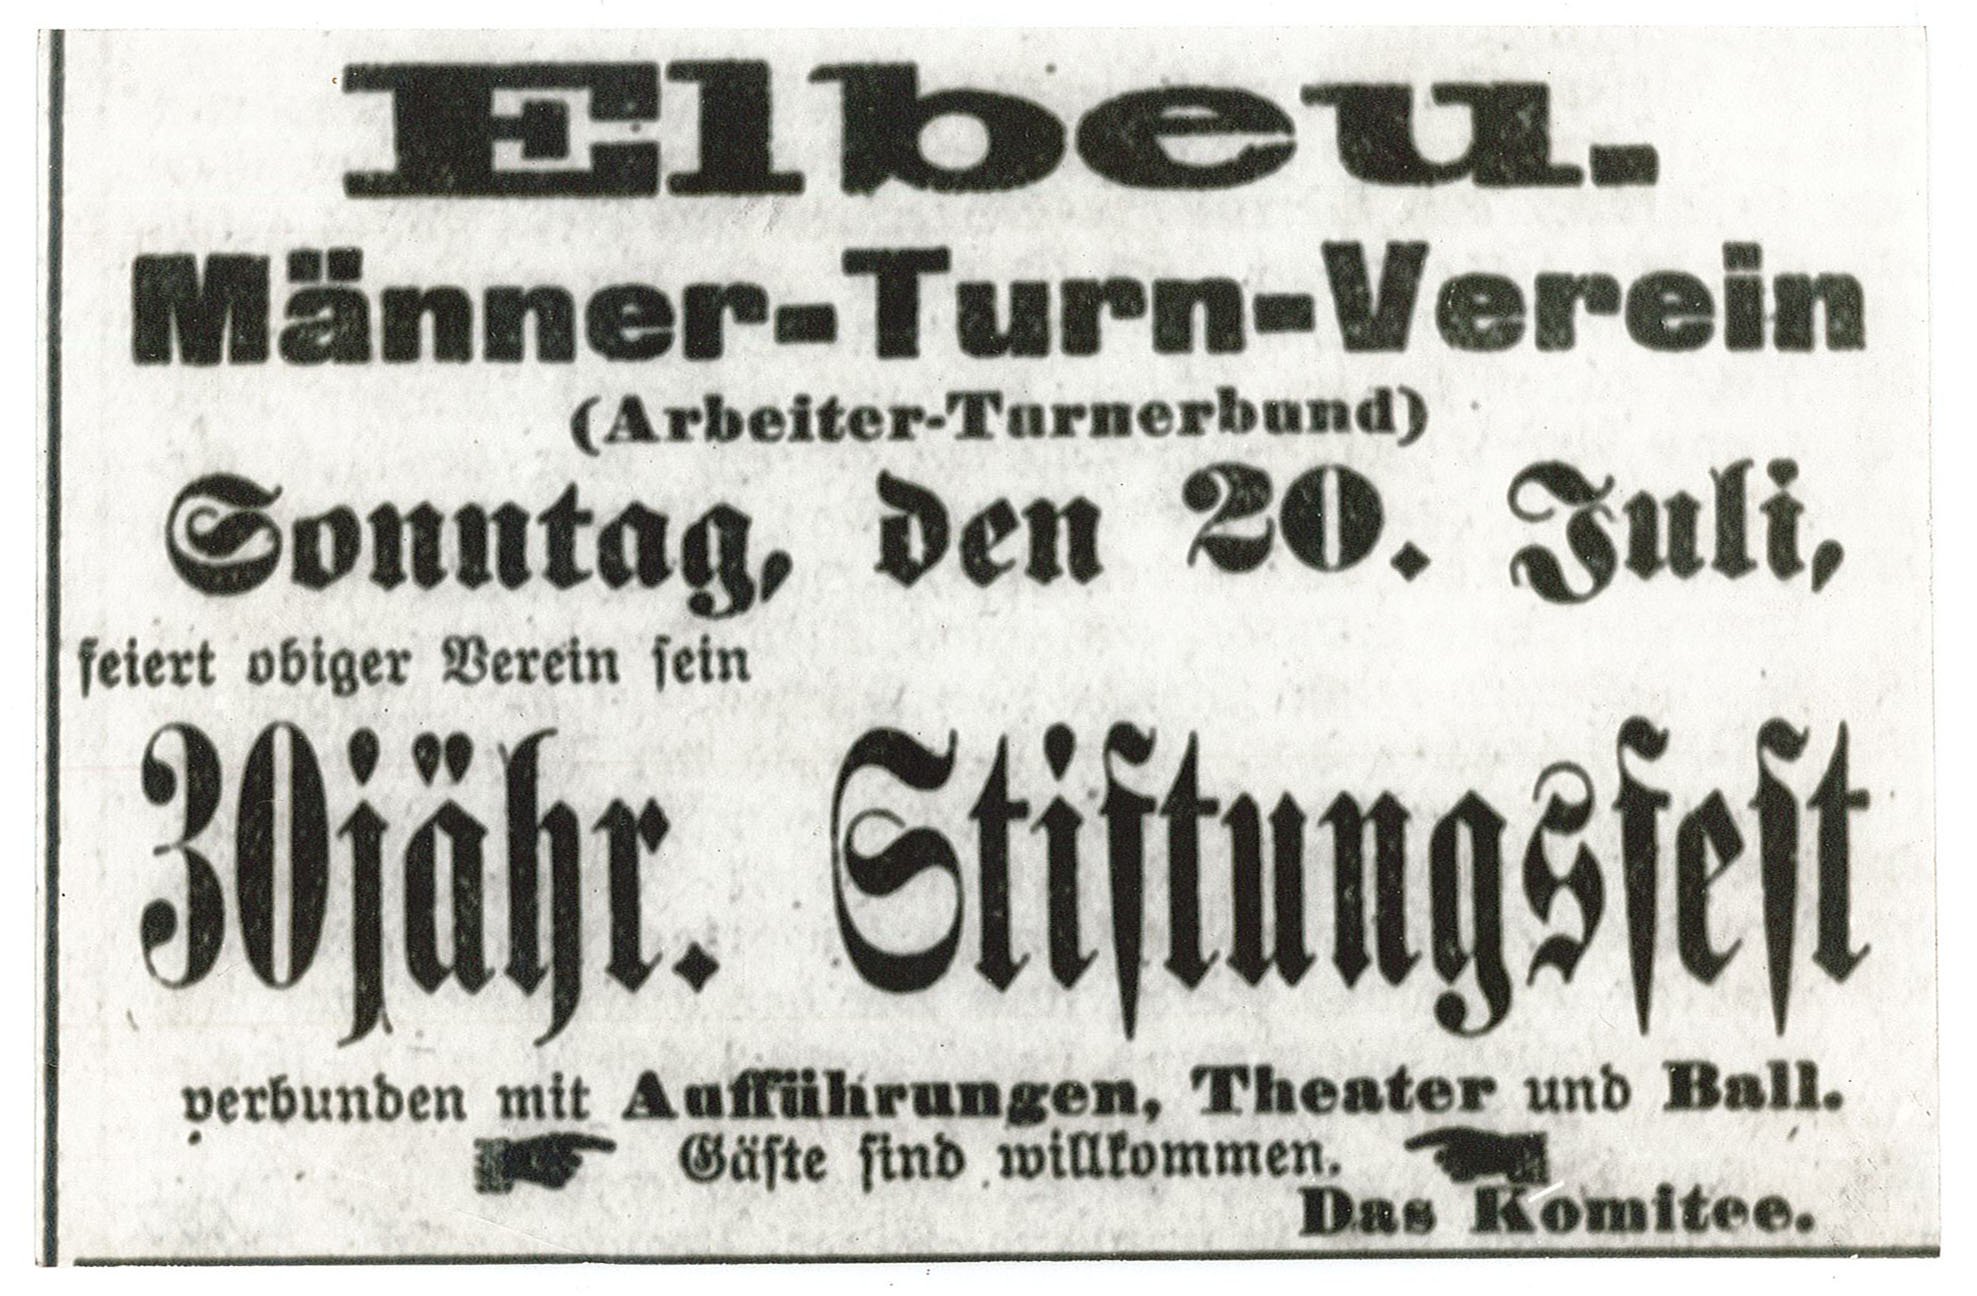 Anzeige des Männer-Turn-Verein Wolmirstedt 1863 e.V. vom 20. Juli 1893 (Museum Wolmirstedt RR-F)